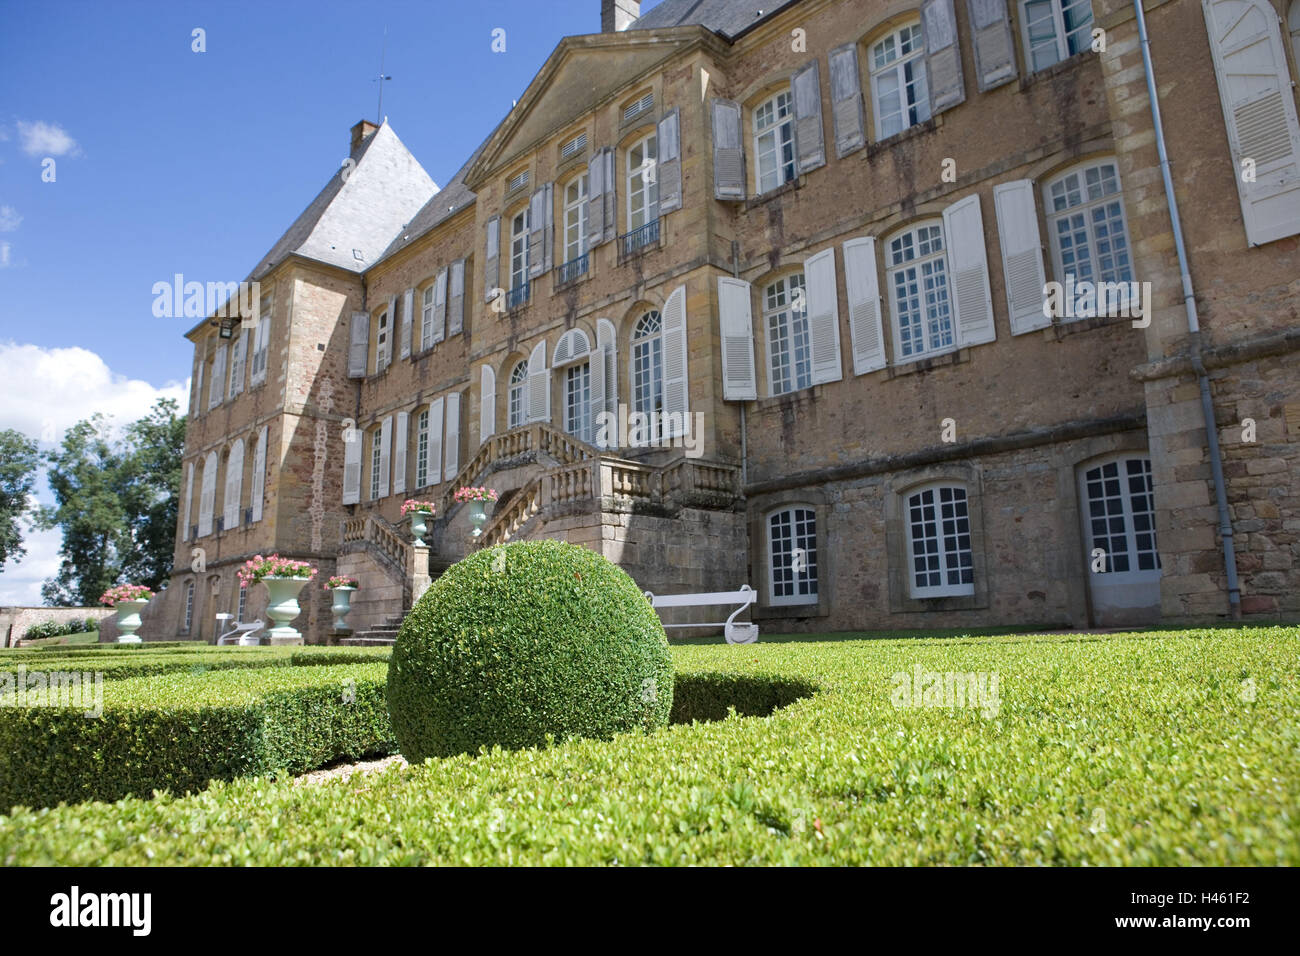 France, Bourgogne, Saone-et-Loire, Charolles, La Clayette, Corbigny, Chateau de Dree, castle garden, book sphere, facade, detail, Stock Photo